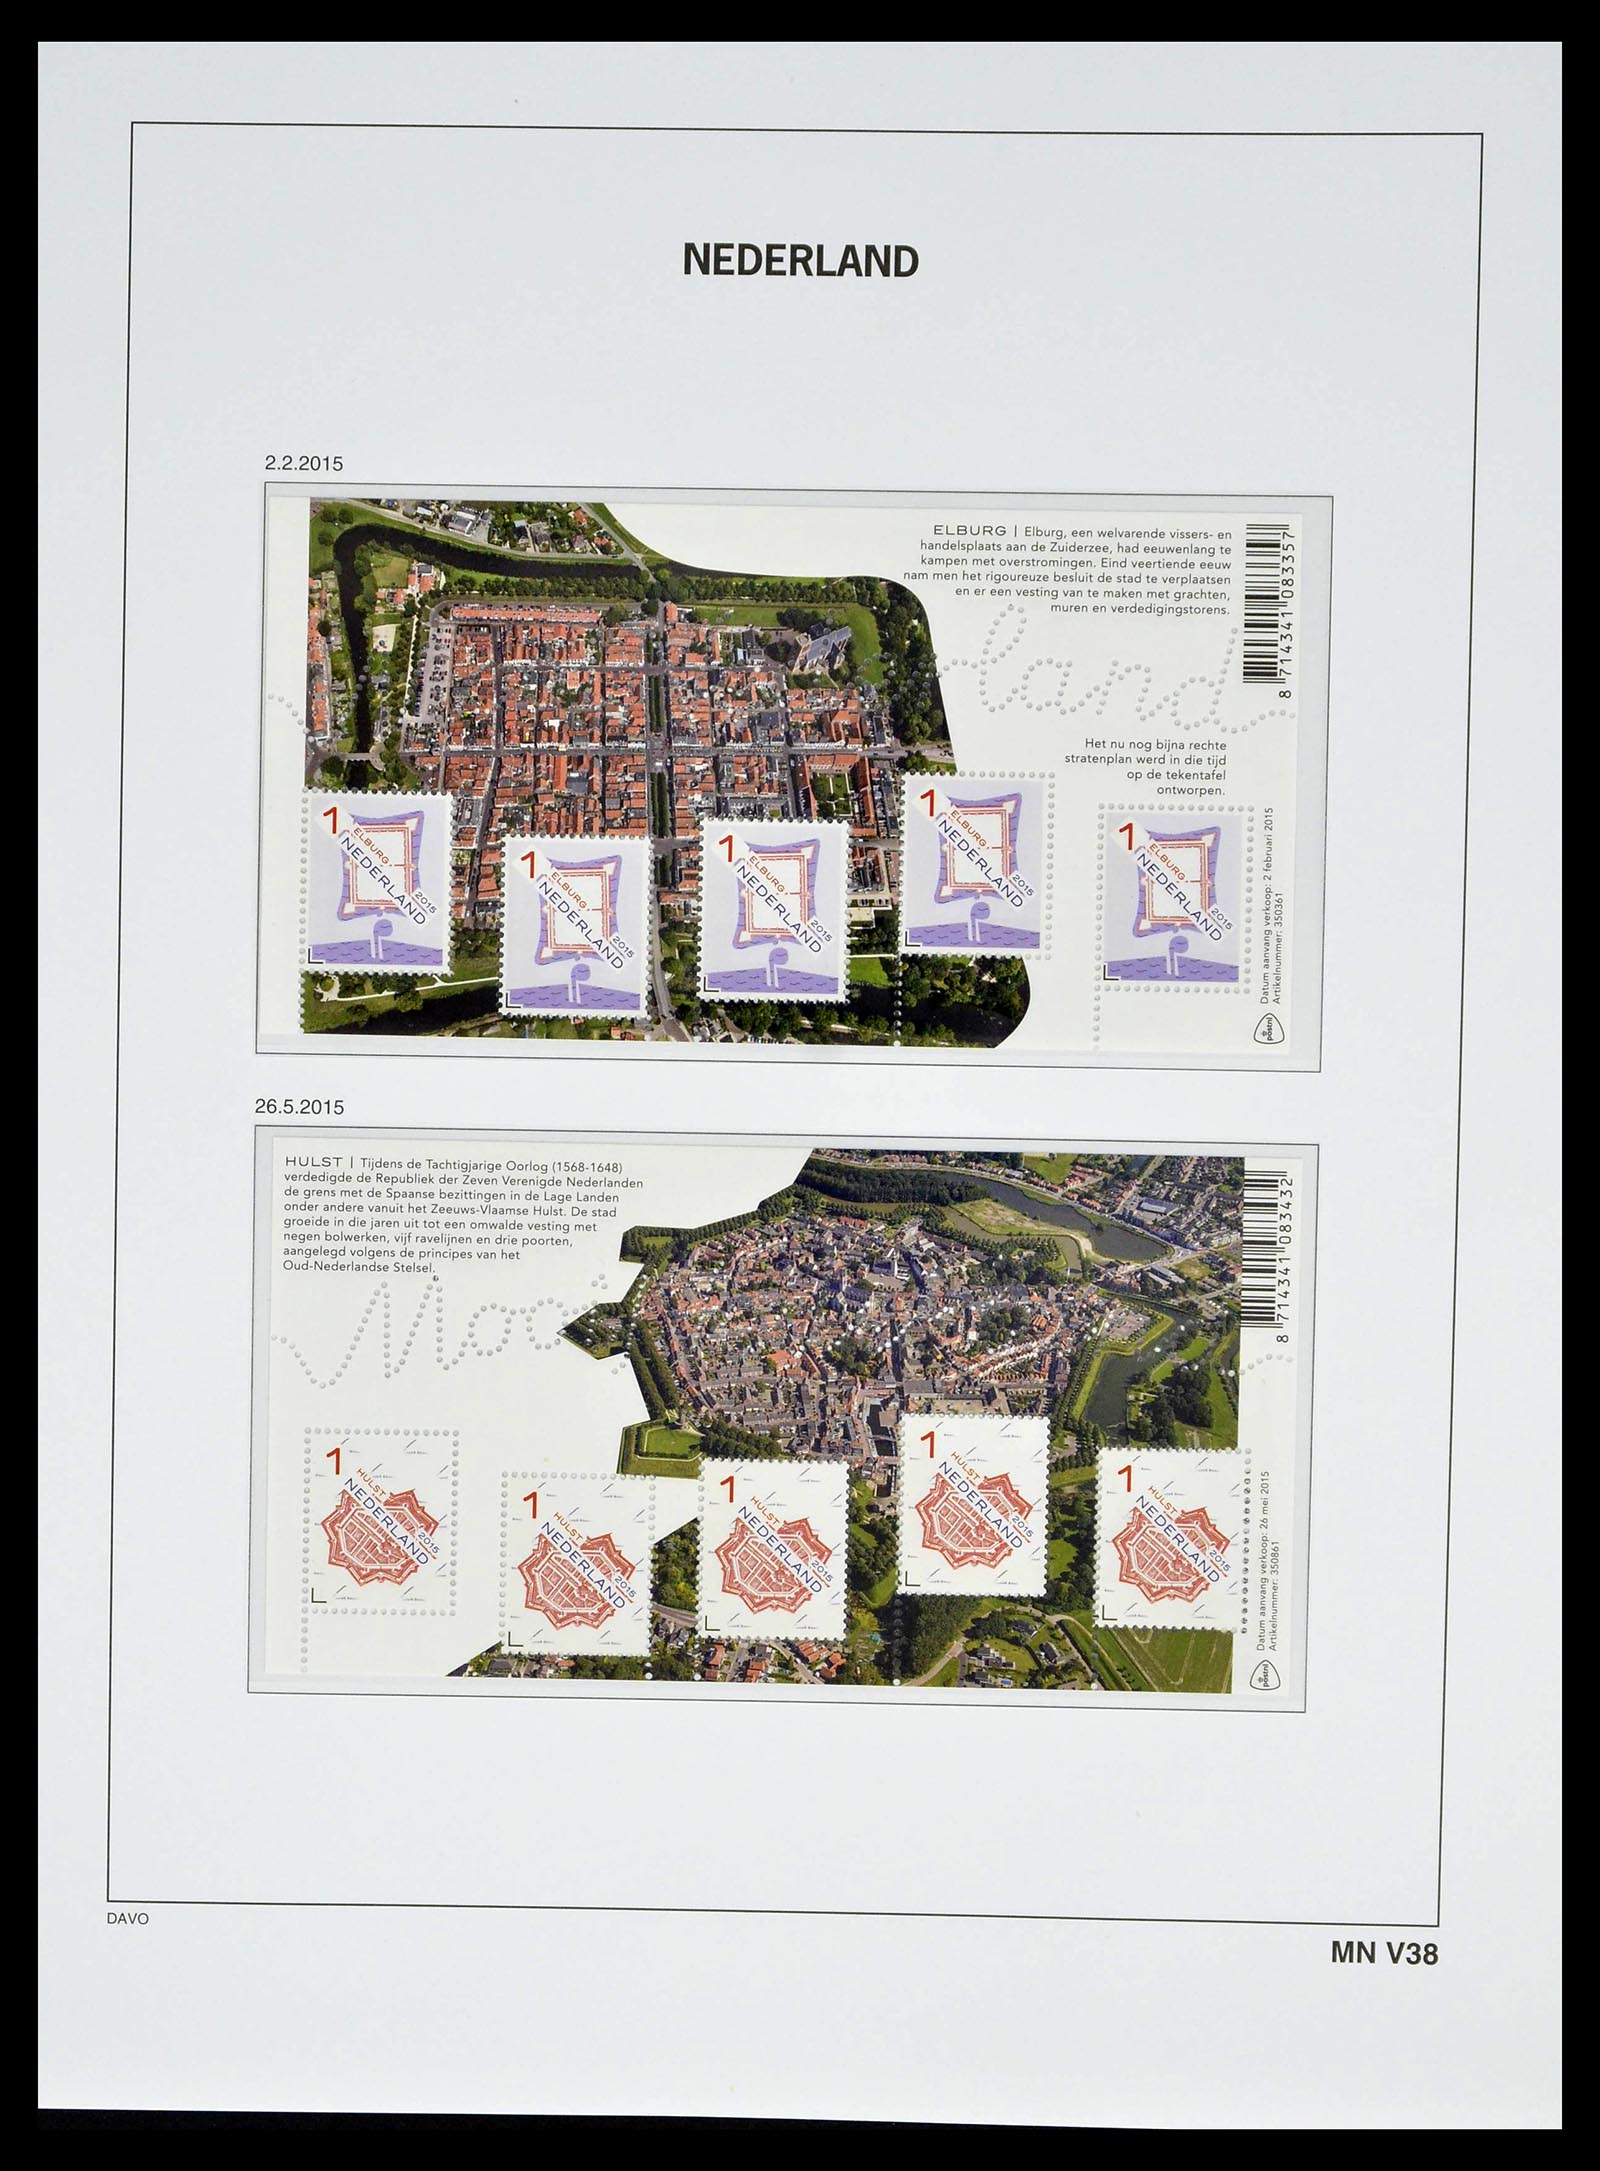 39134 0257 - Stamp collection 39134 Netherlands sheetlets 1992-2019!